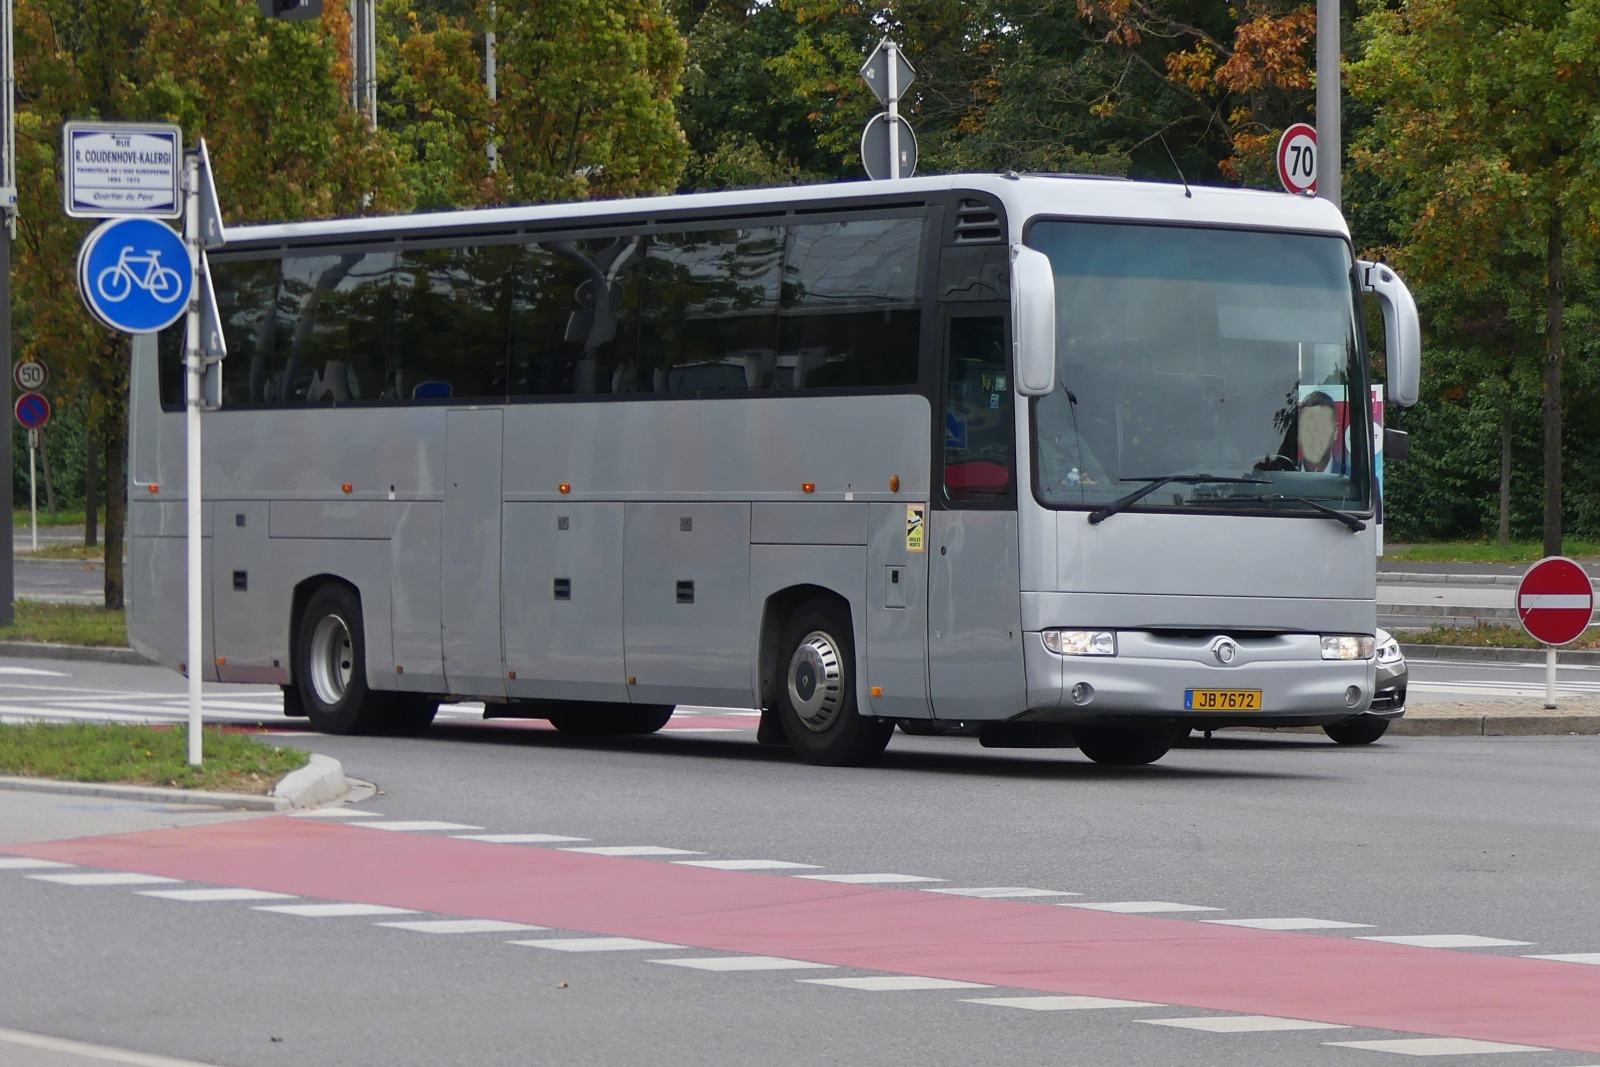 JB 7672, Irisbus Iliade Renault Bus gesehen in den Straßen der Stadt Luxemburg. 10.2023